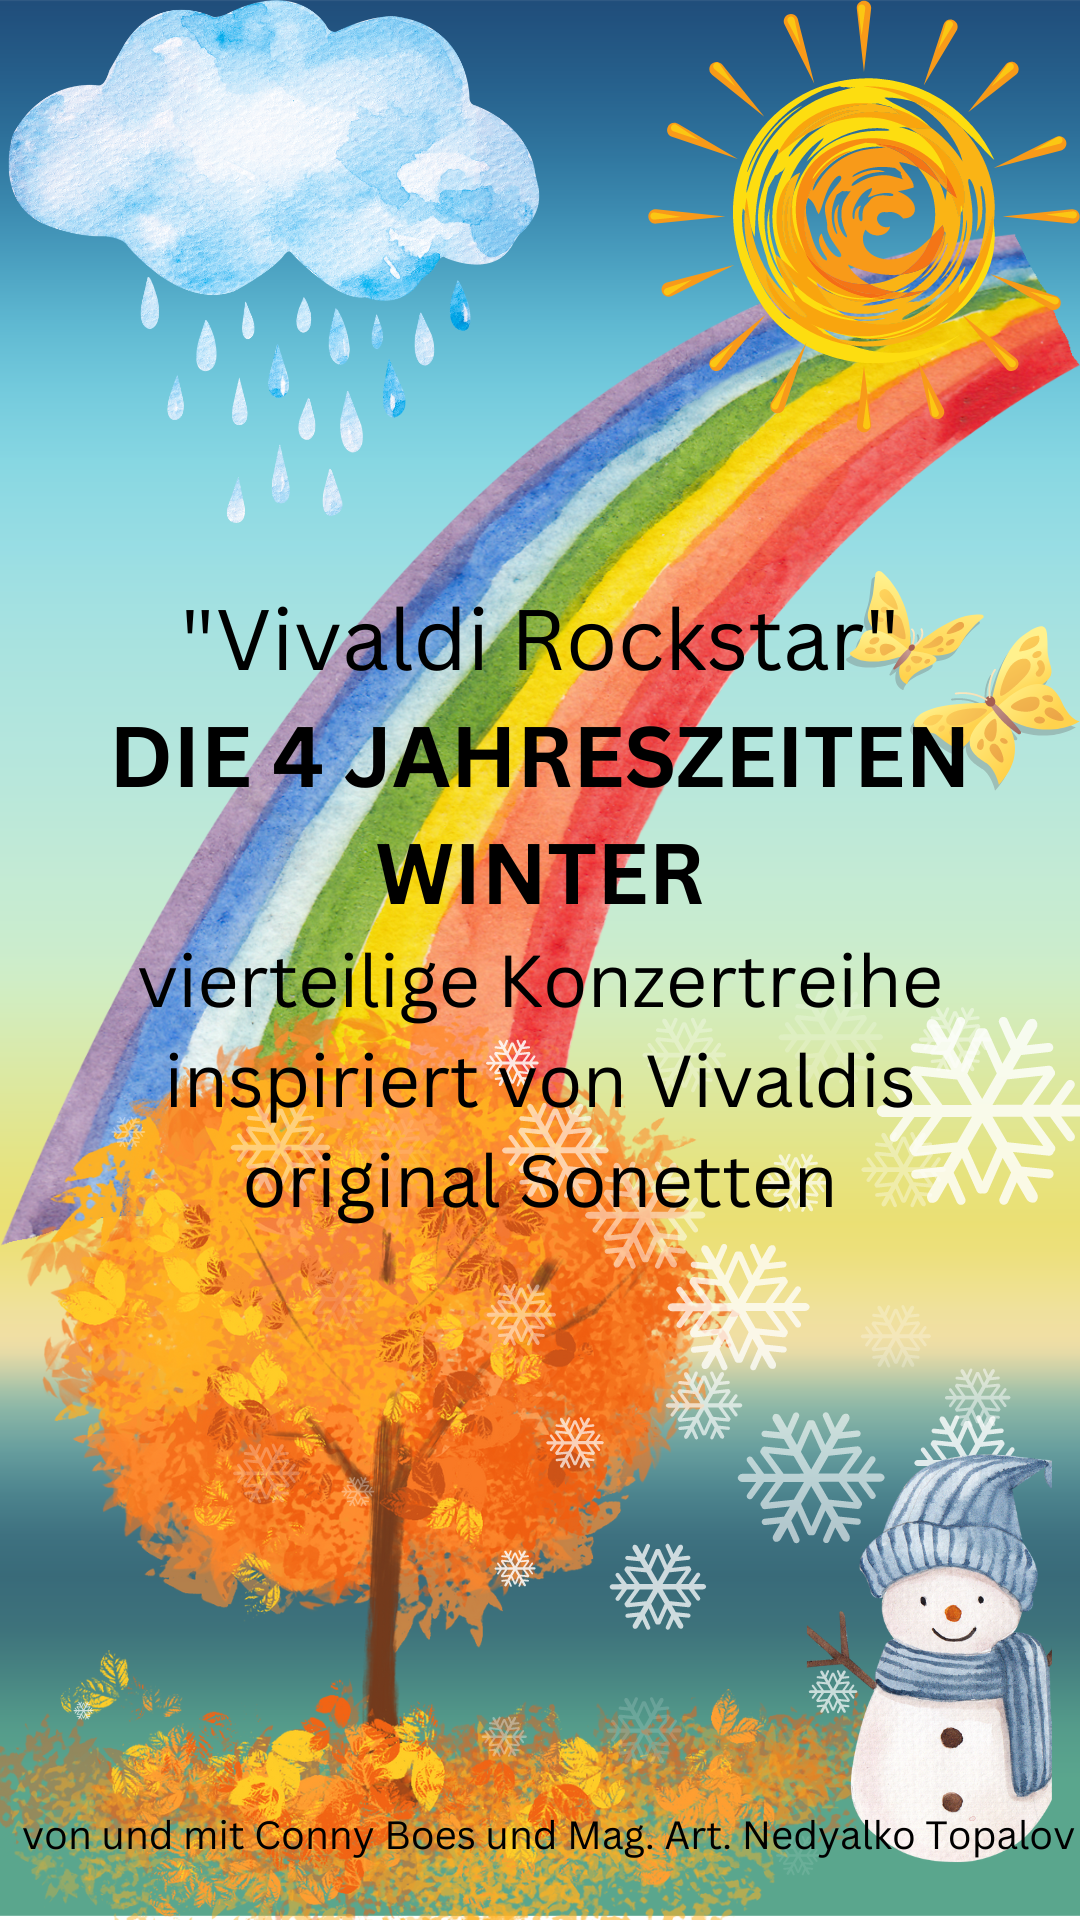 Vivaldi Rockstar "Die vier Jahreszeiten" - Winter